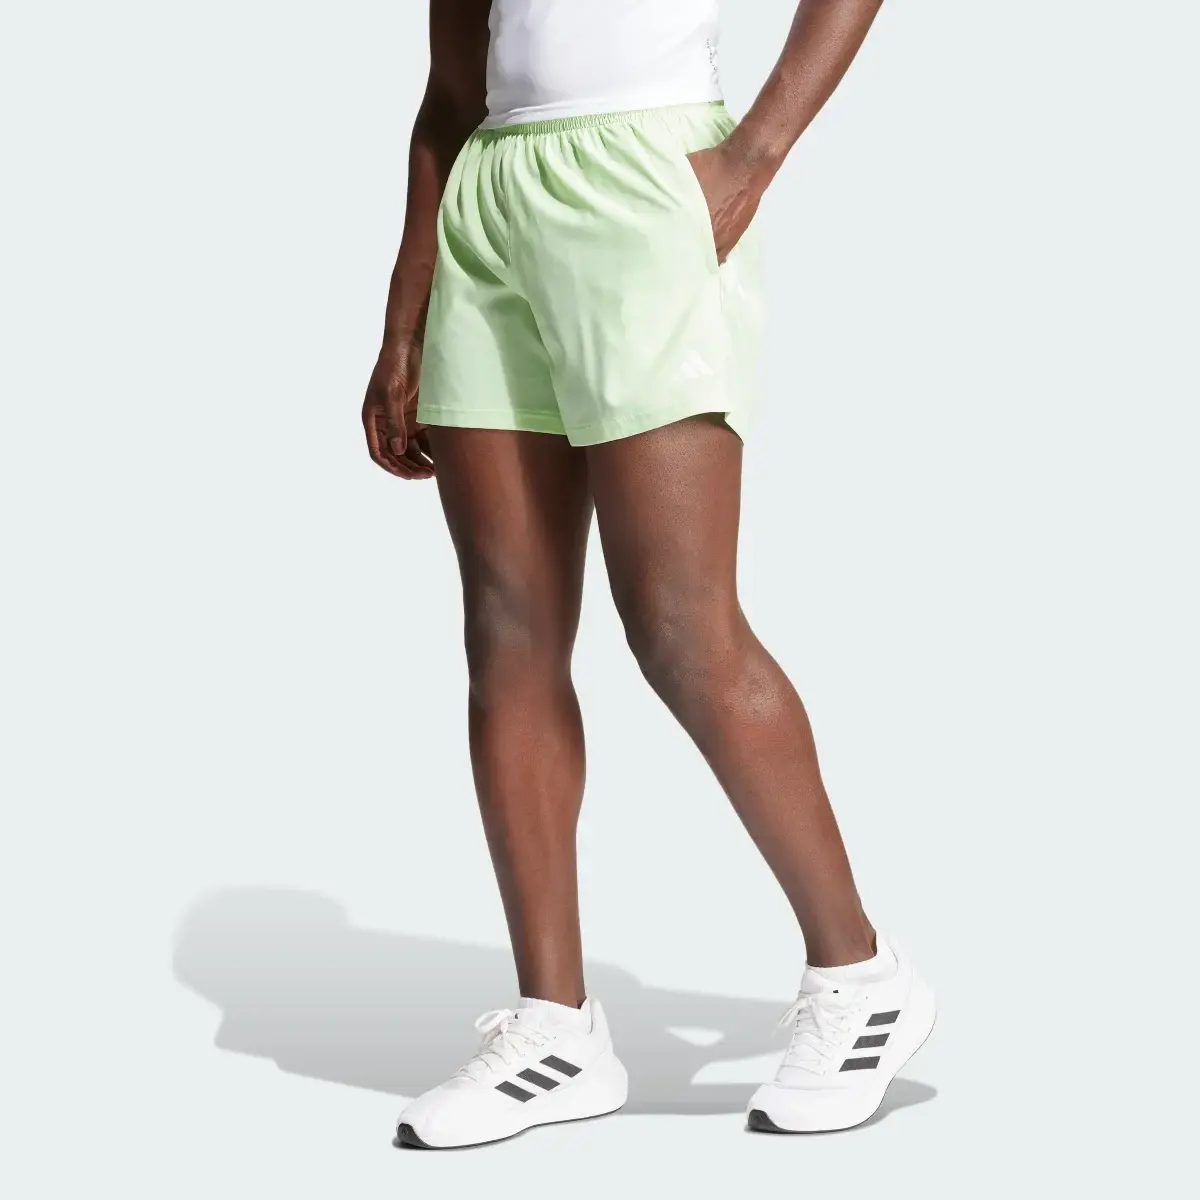 Adidas Own The Run Shorts. 1